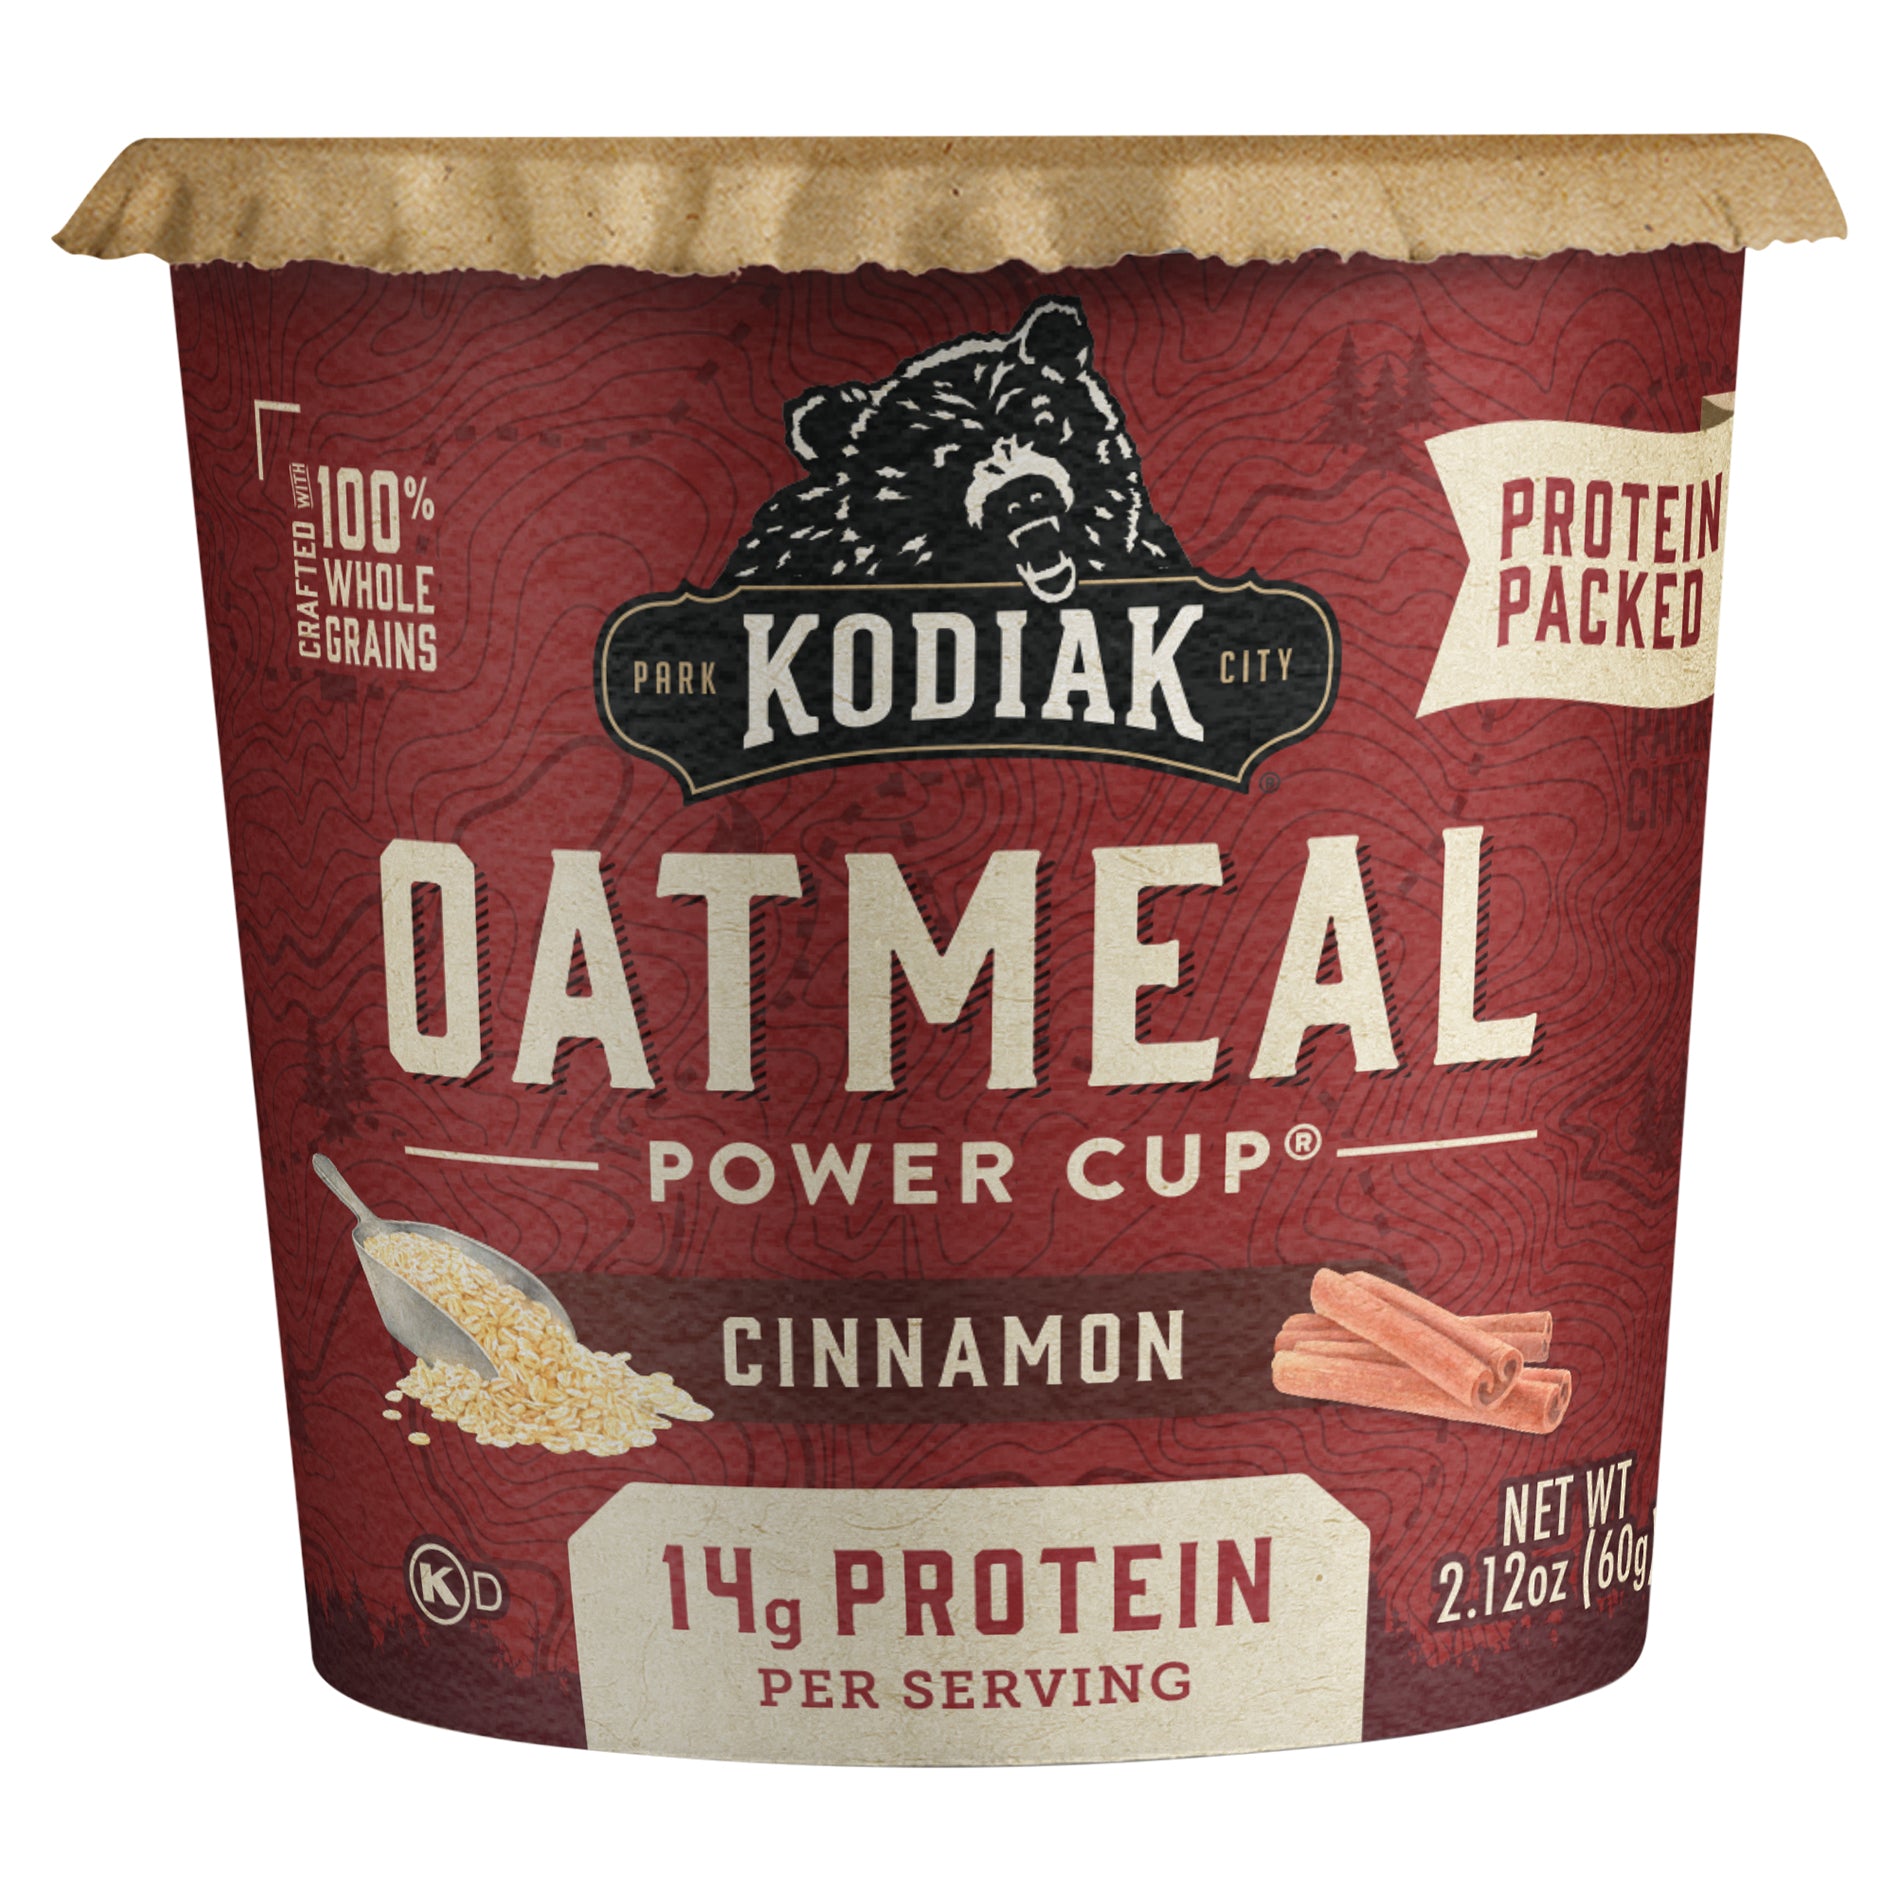 Kodiak Protein Oats, Classic - 16 oz